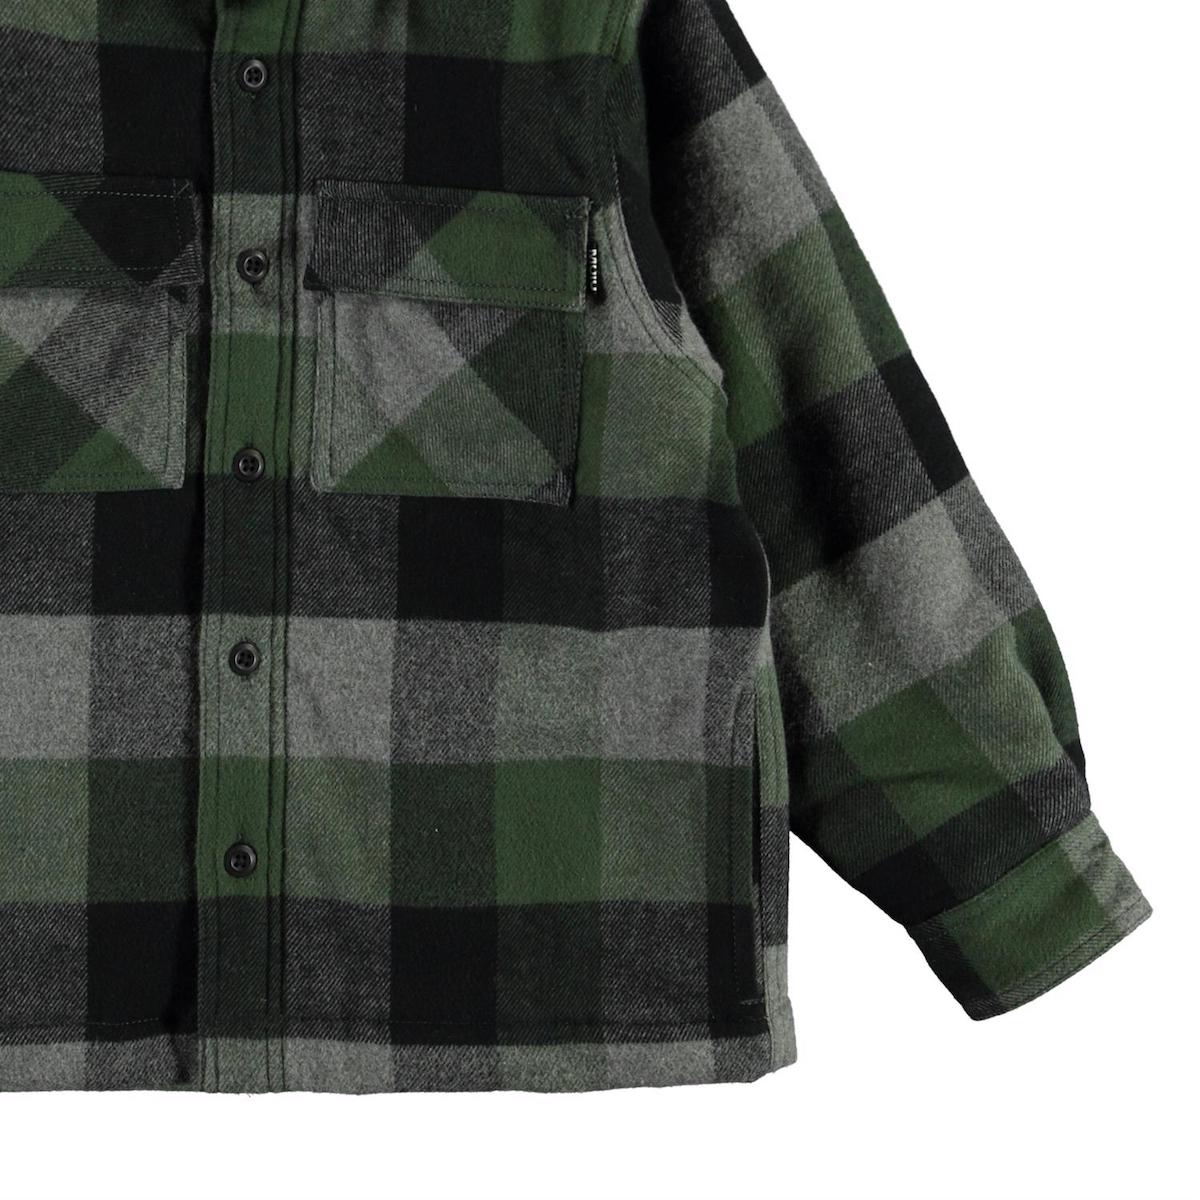 Molo Hayes Long Sleeve Shirt Jacket- Check